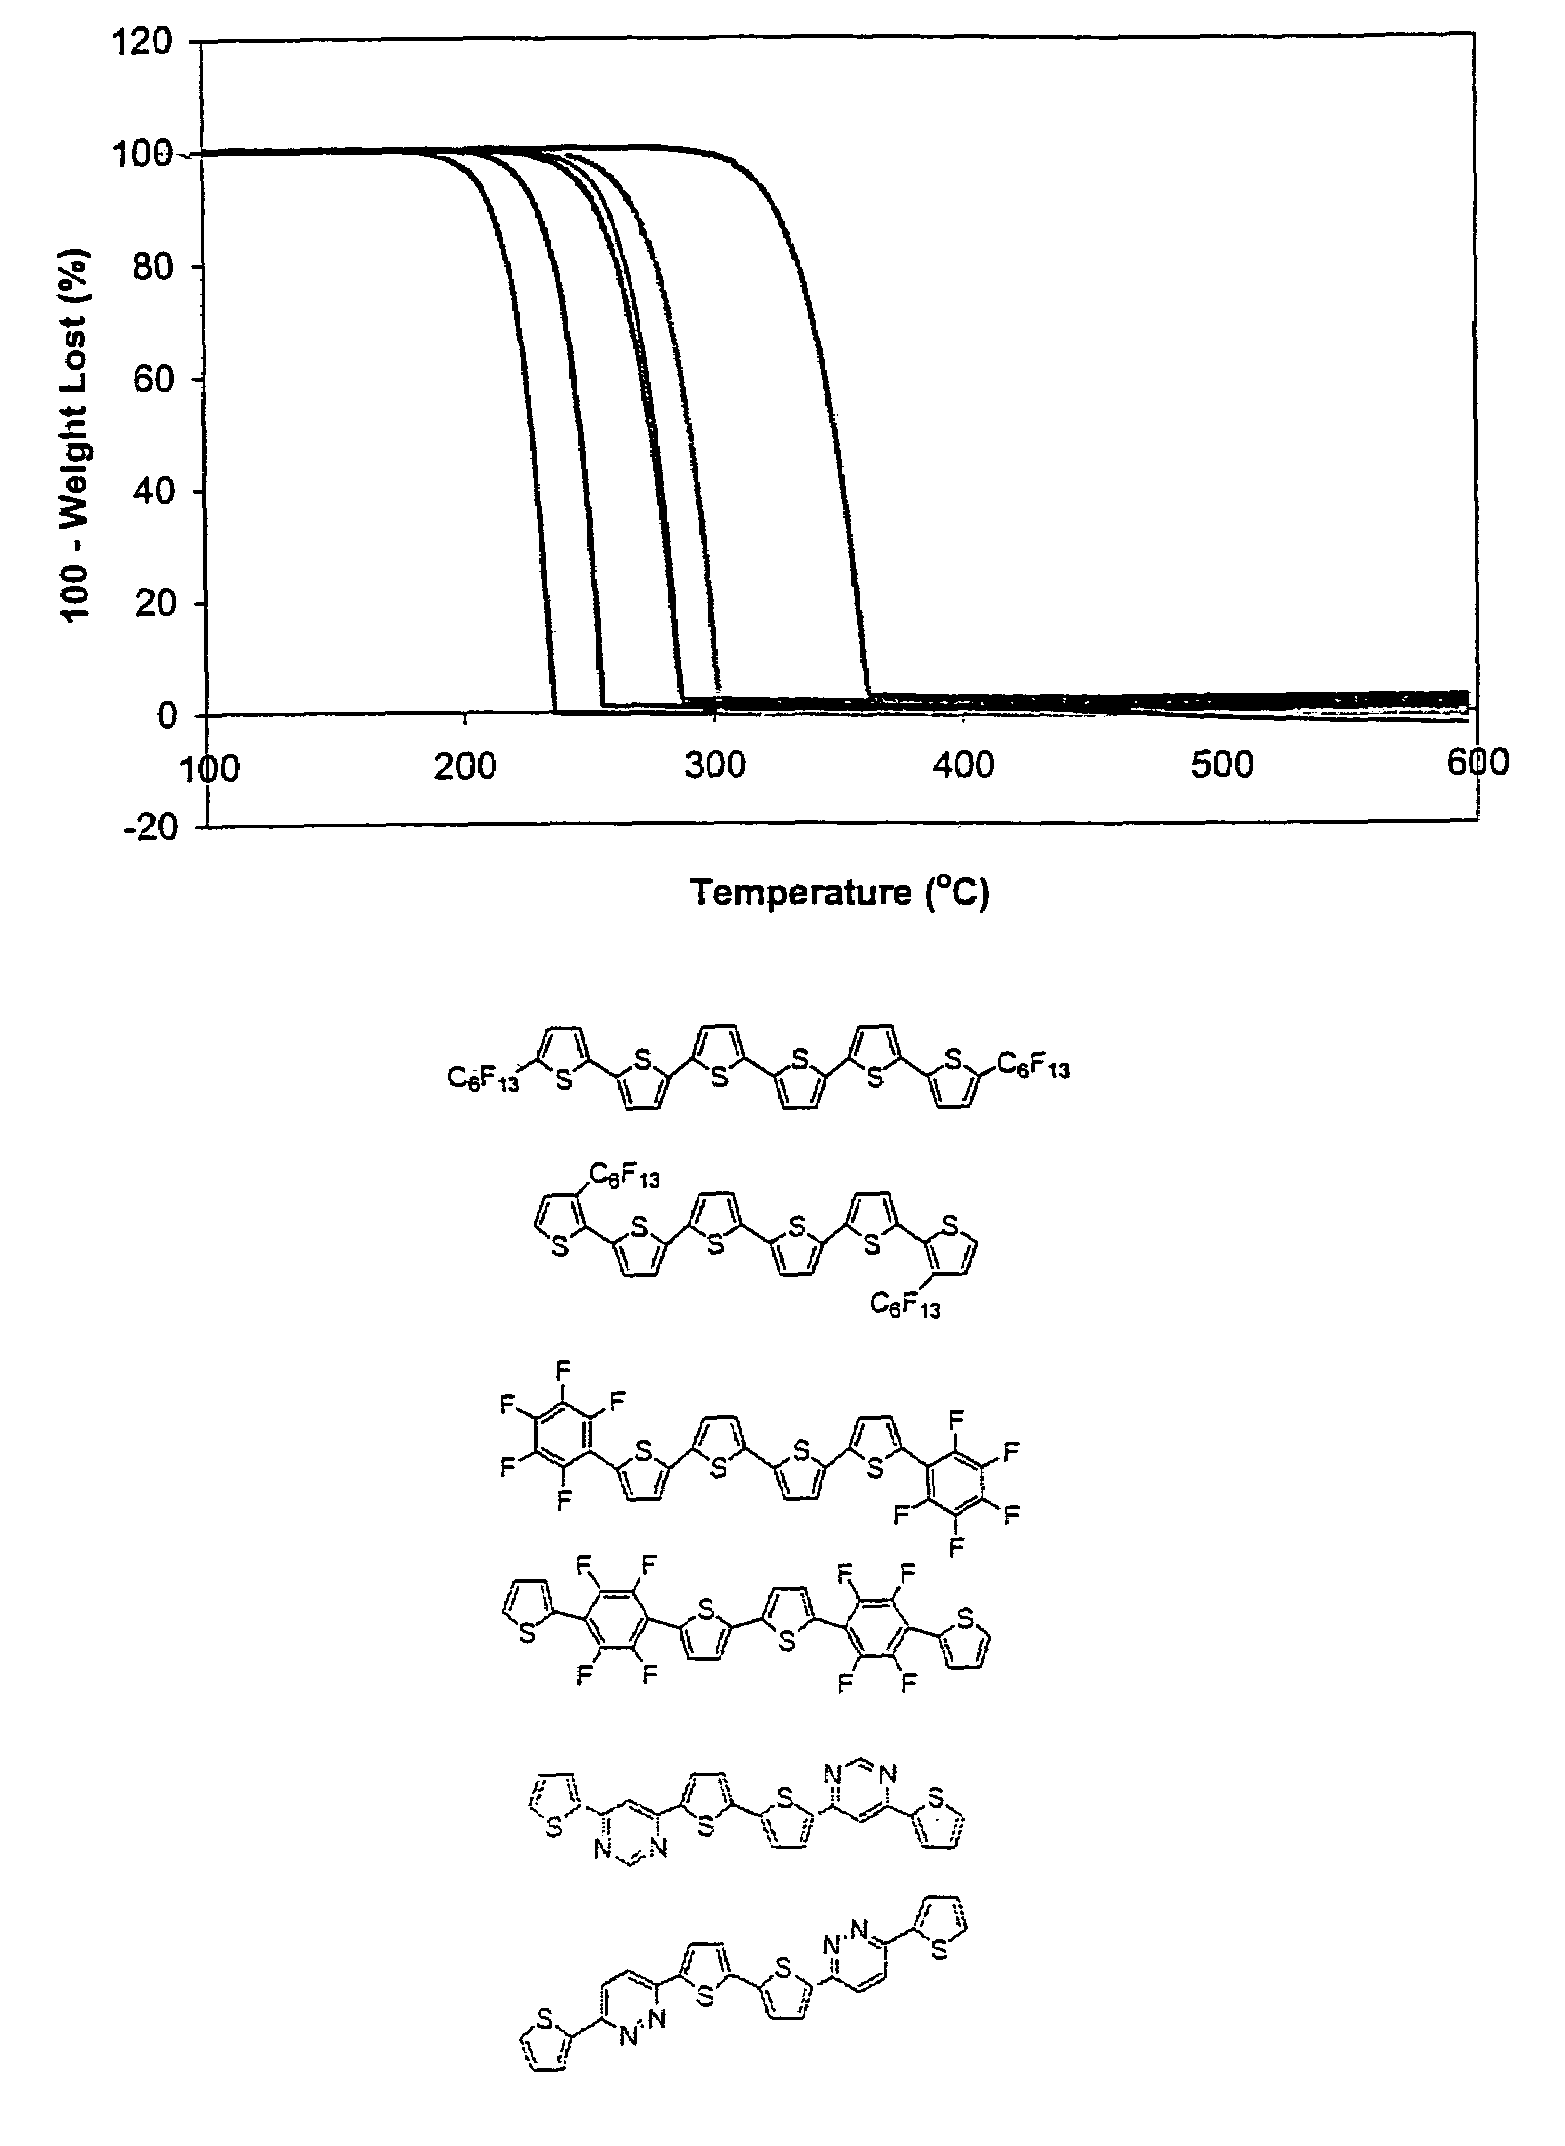 n-Type thiophene semiconductors